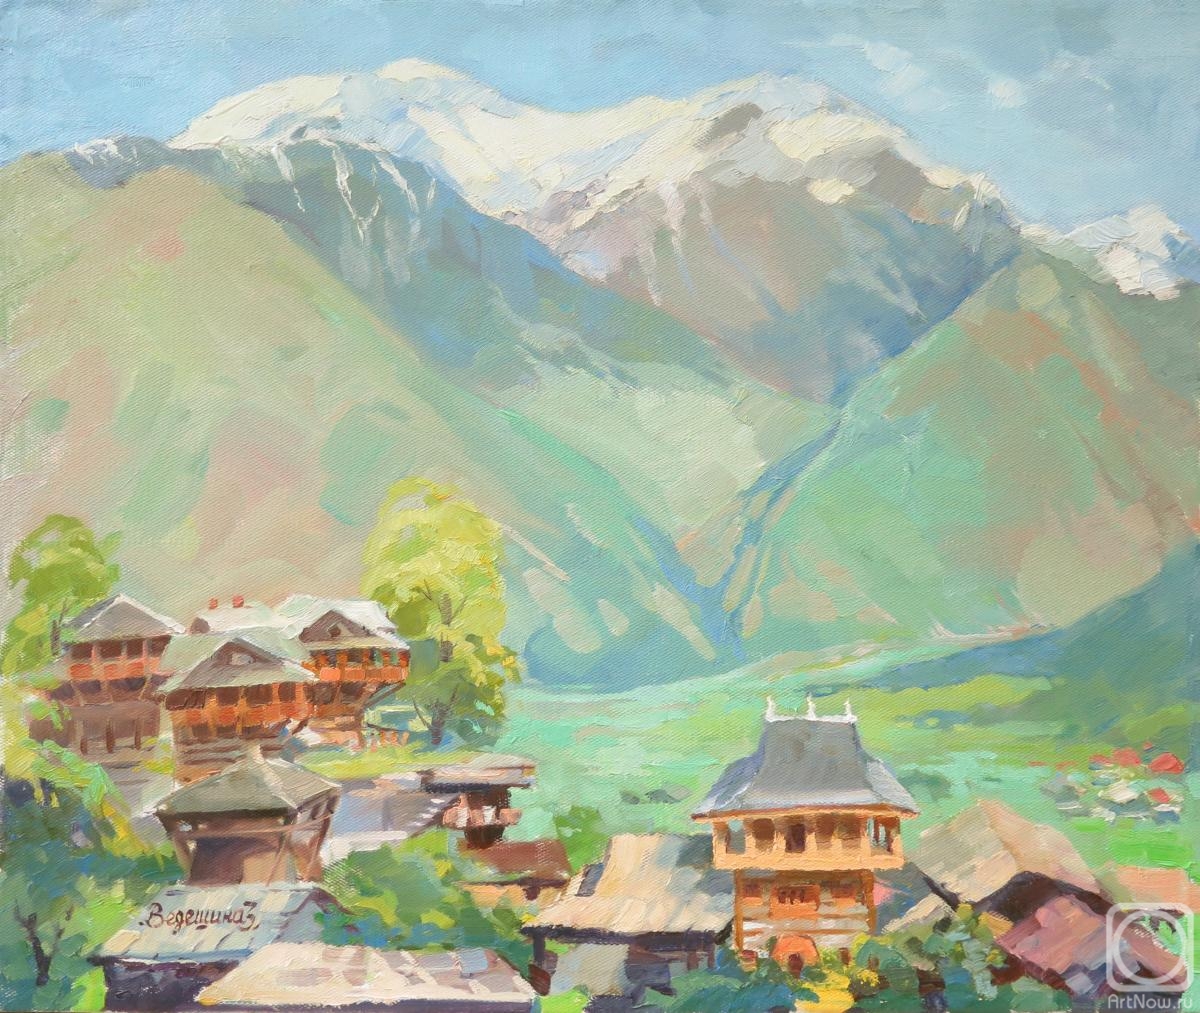 Vedeshina Zinaida. The Himalayas. In Naggar spring